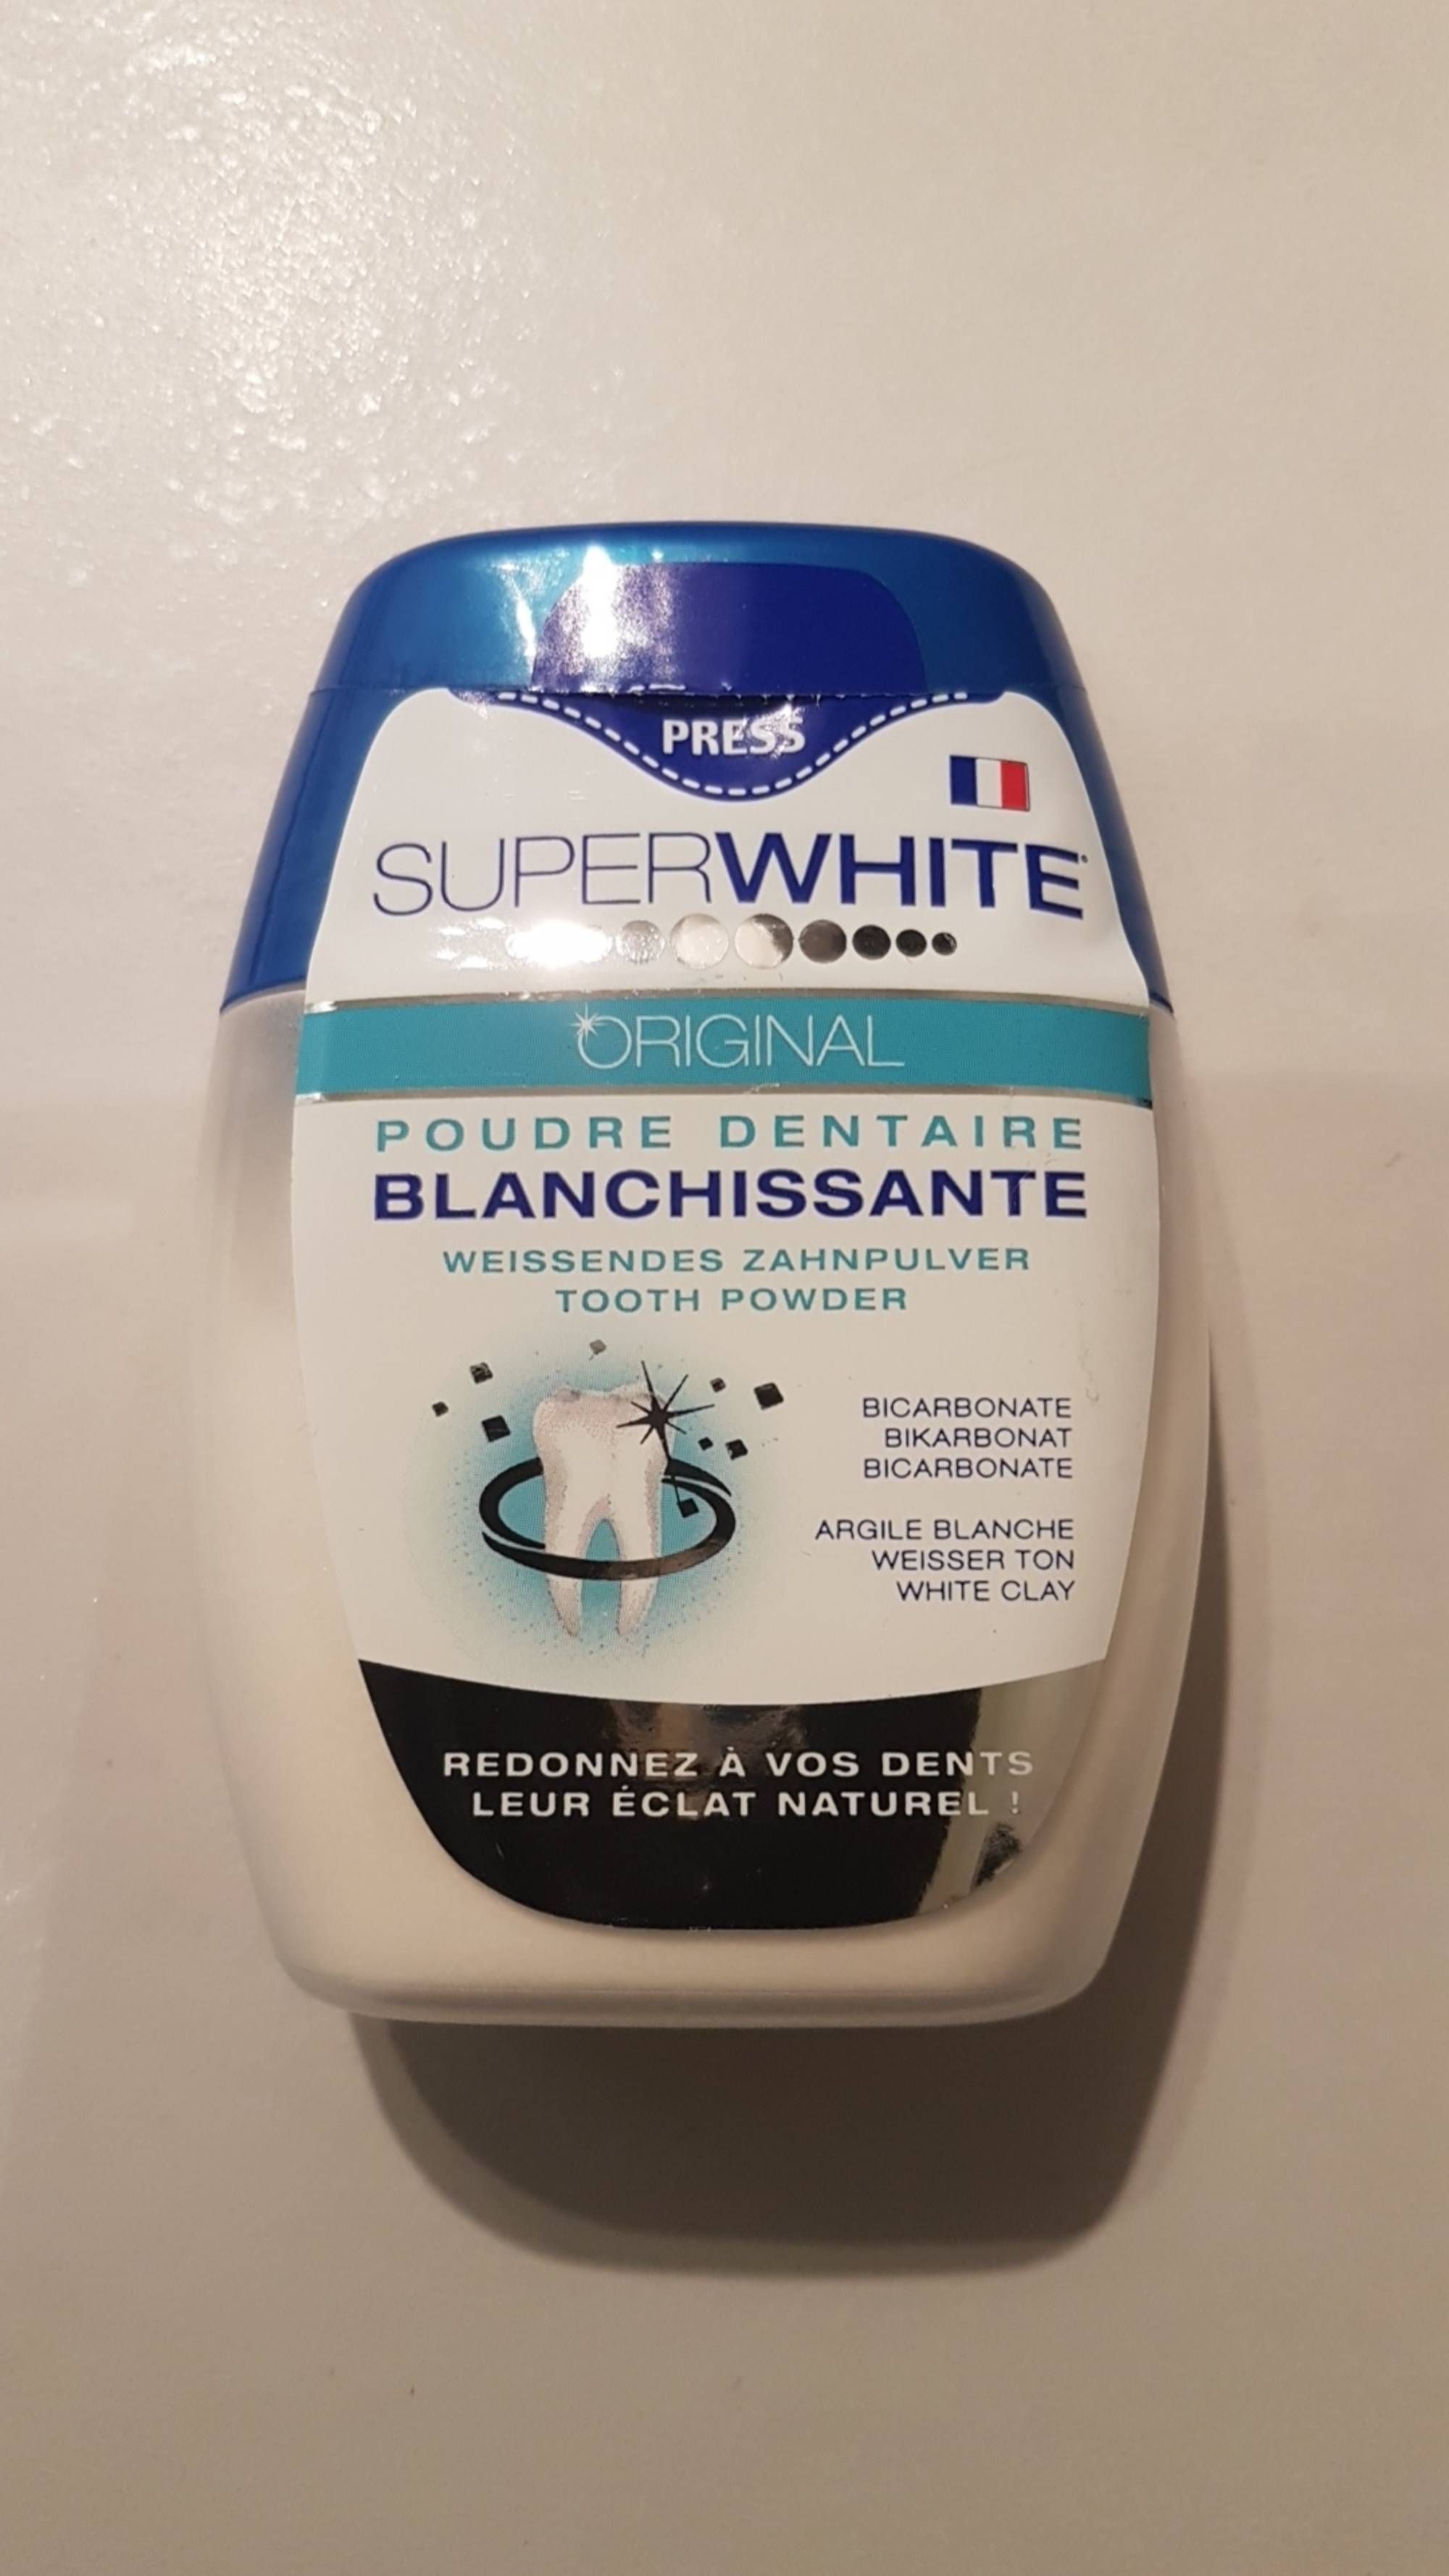 SUPERWHITE - Original - Poudre dentaire blanchissante